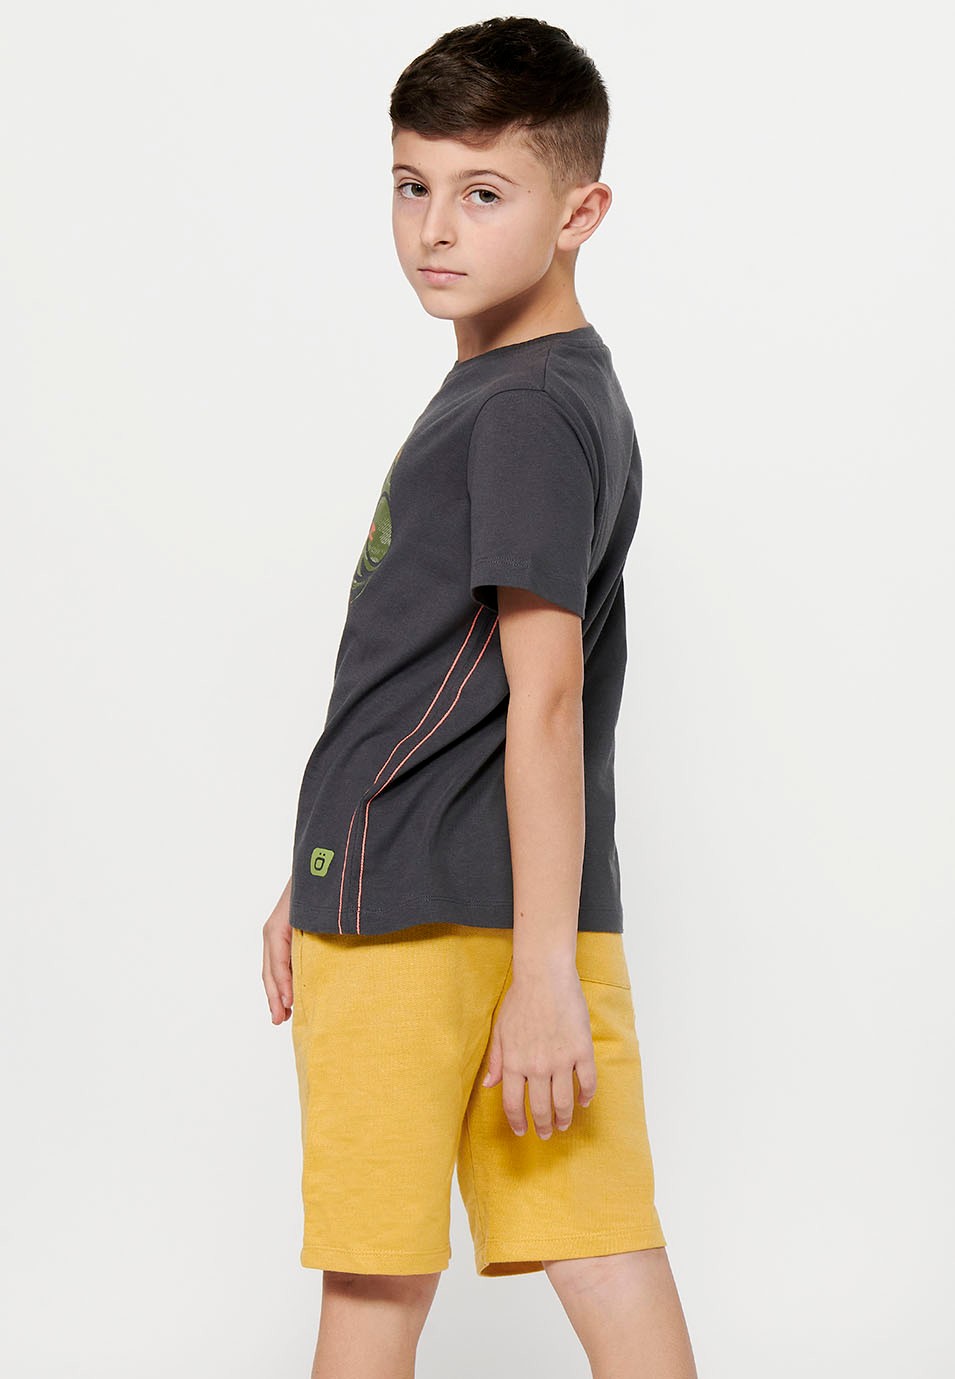 Camiseta de manga corta de Algodón y cuello redondo con Estampado delantero de Color Gris Oscuro para Niño 7